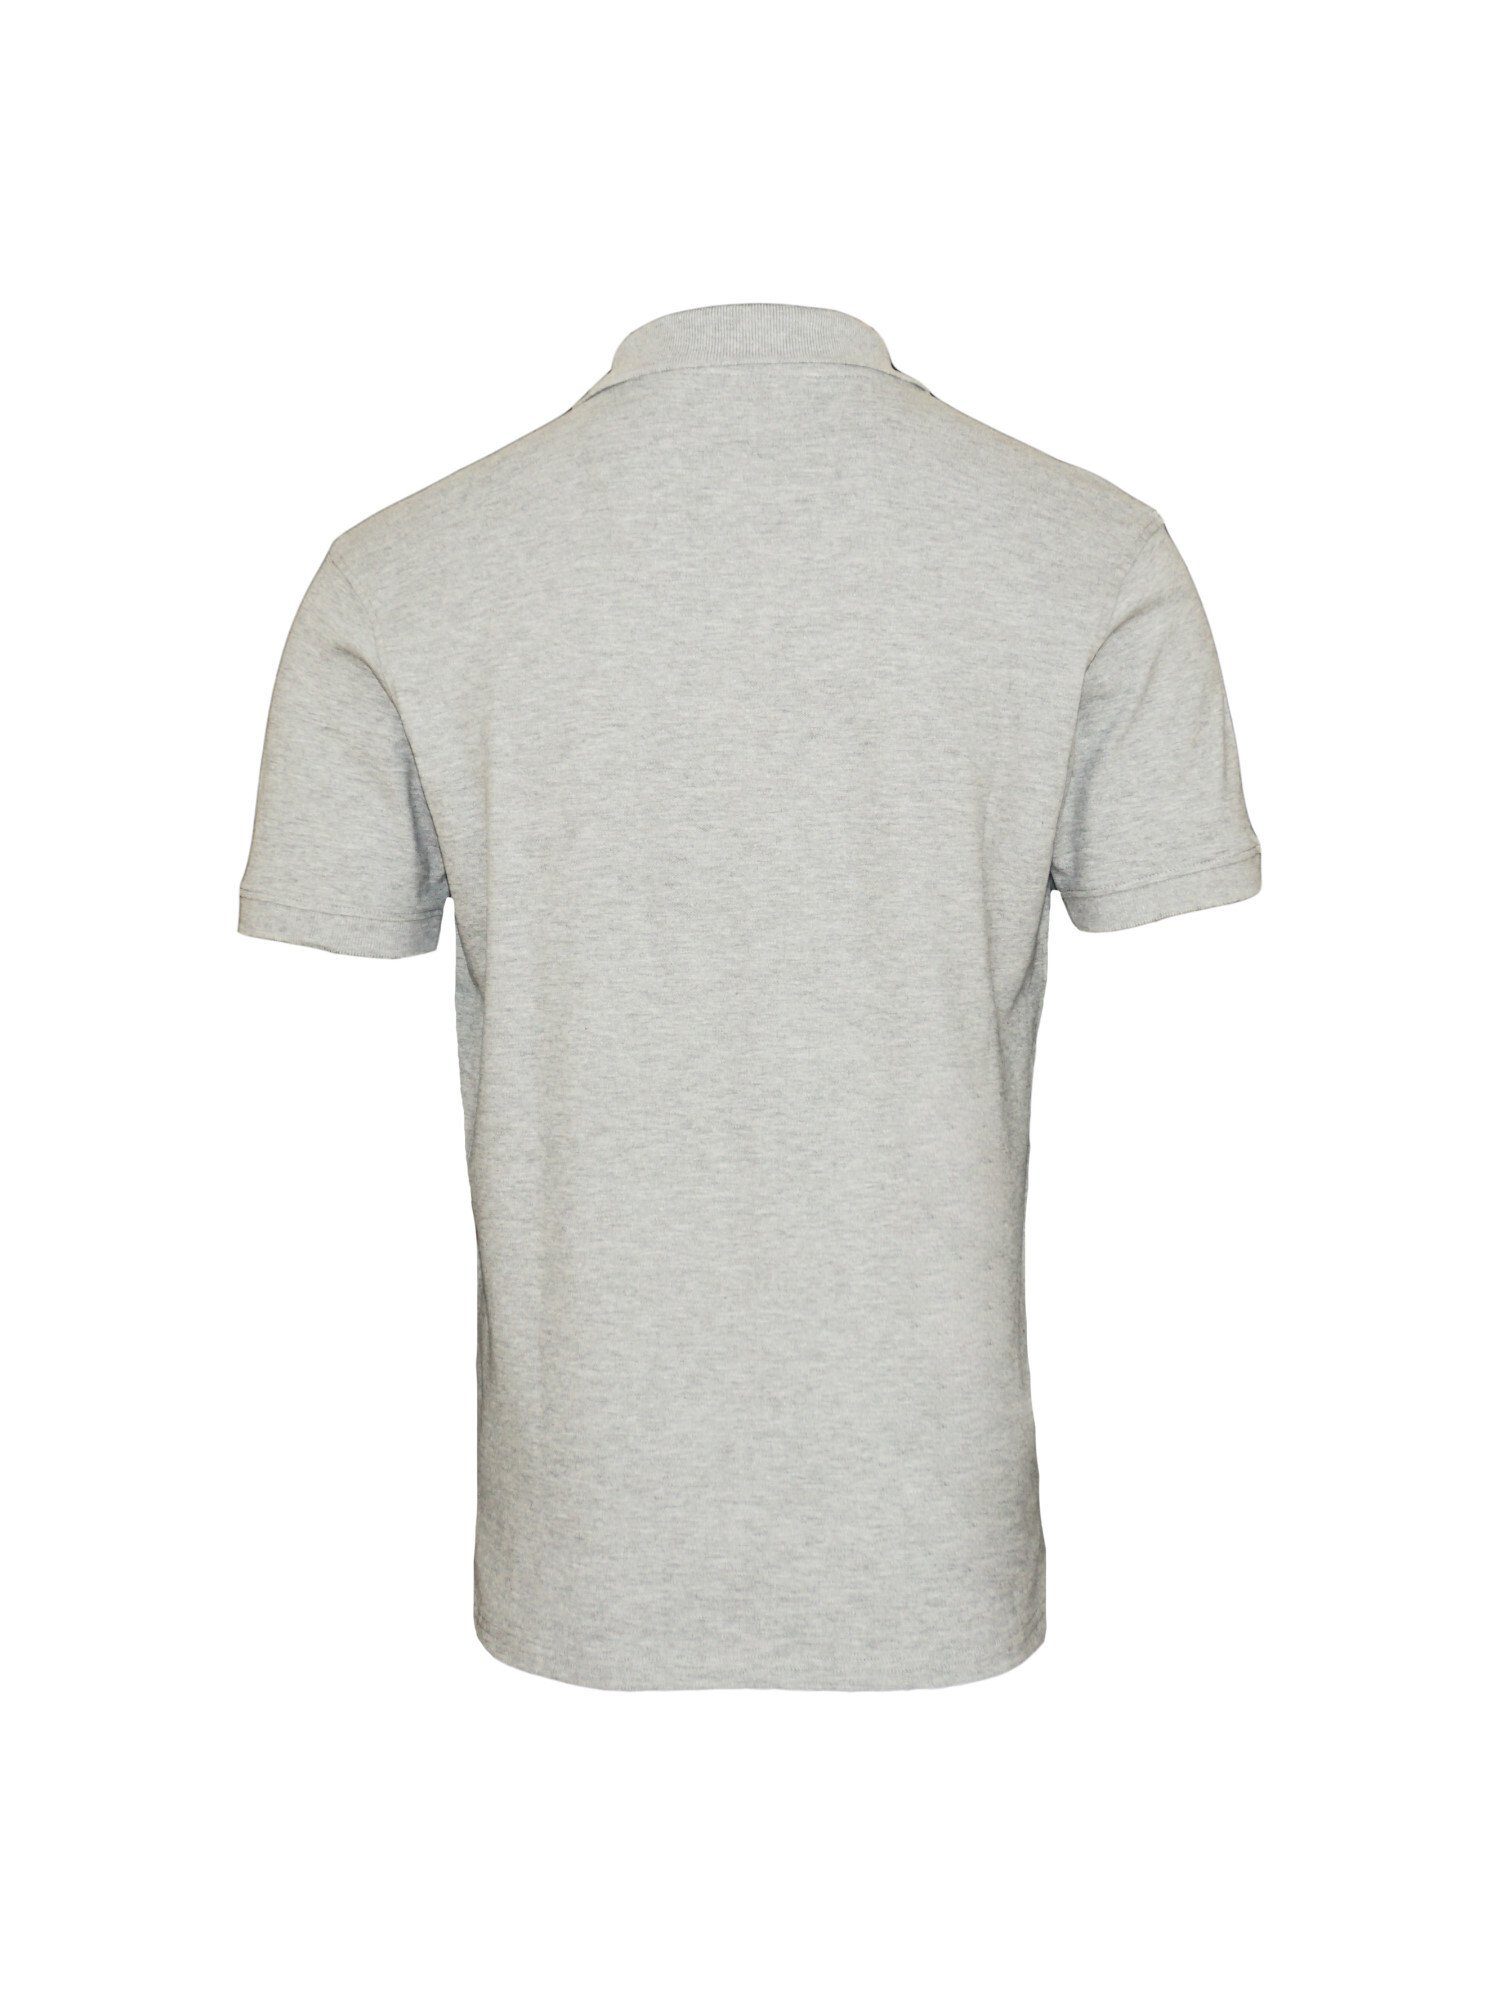 Poloshirt Shirt Basic Assn Shortsleeve U.S. Polo Polo (1-tlg) Poloshirt